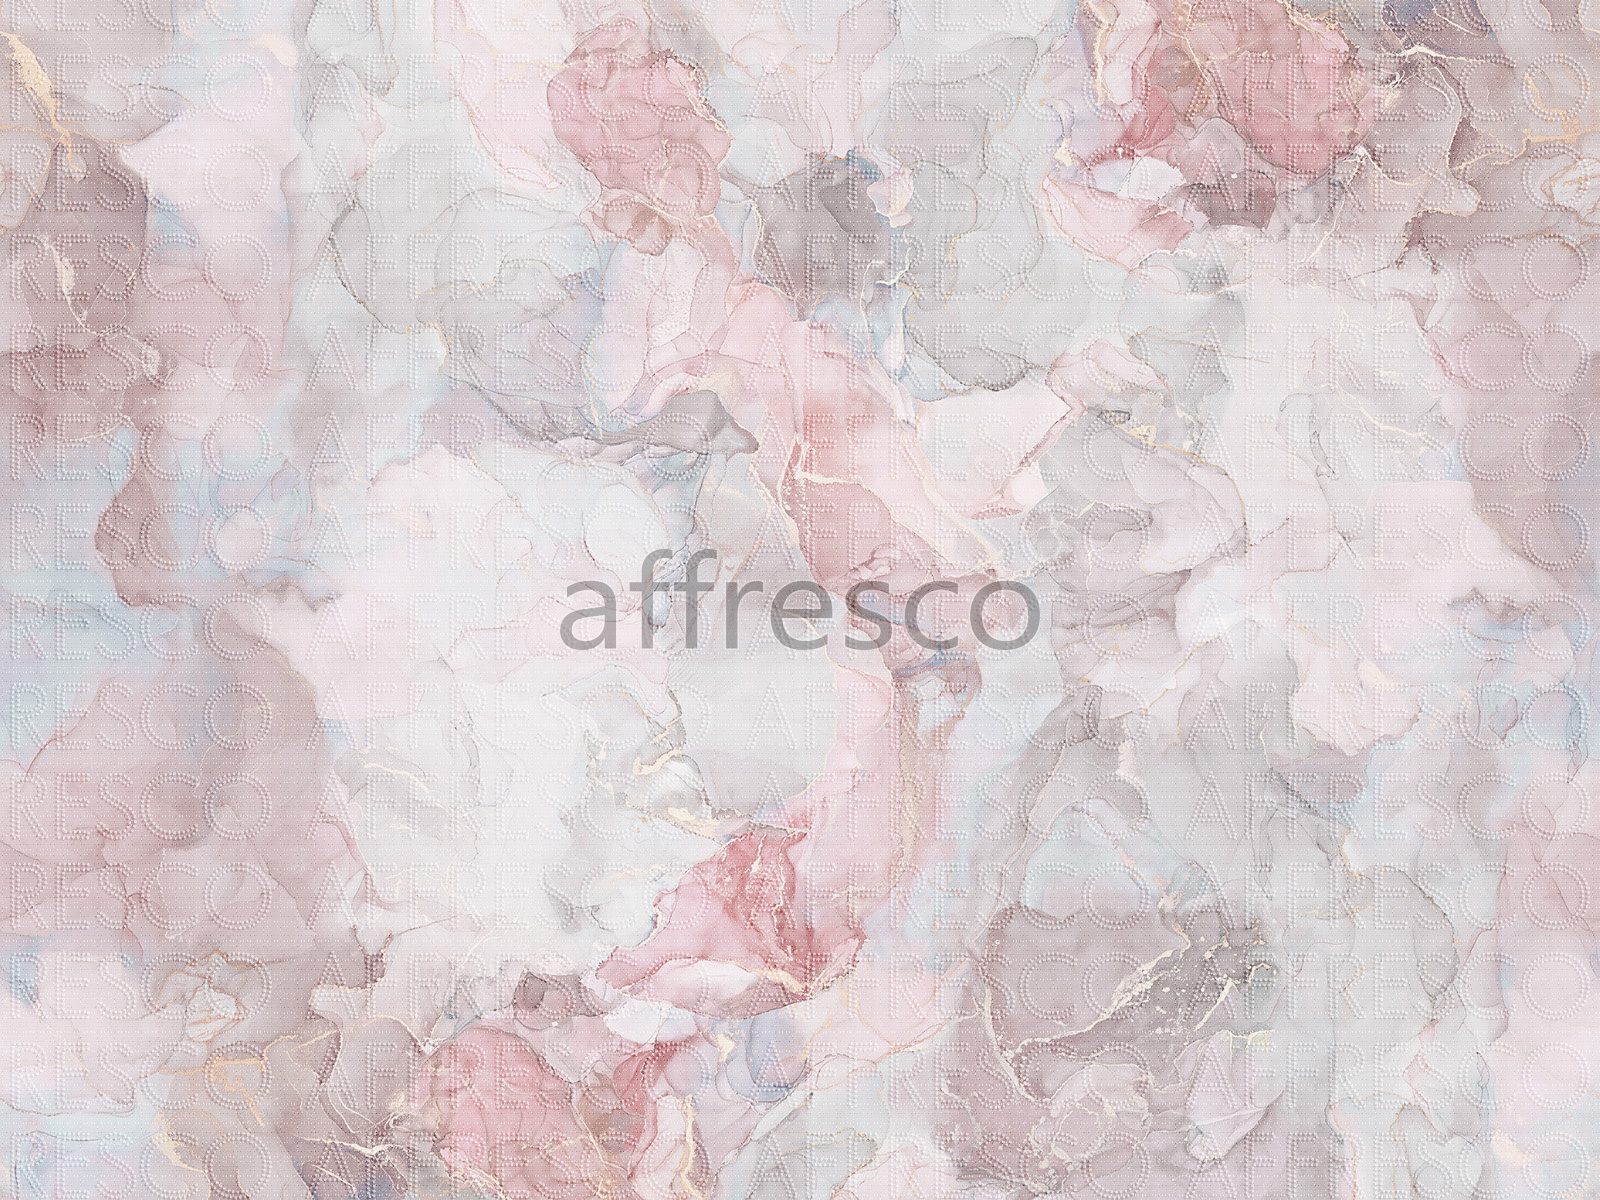 AF2145-COL5 | Emotion Art | Affresco Factory